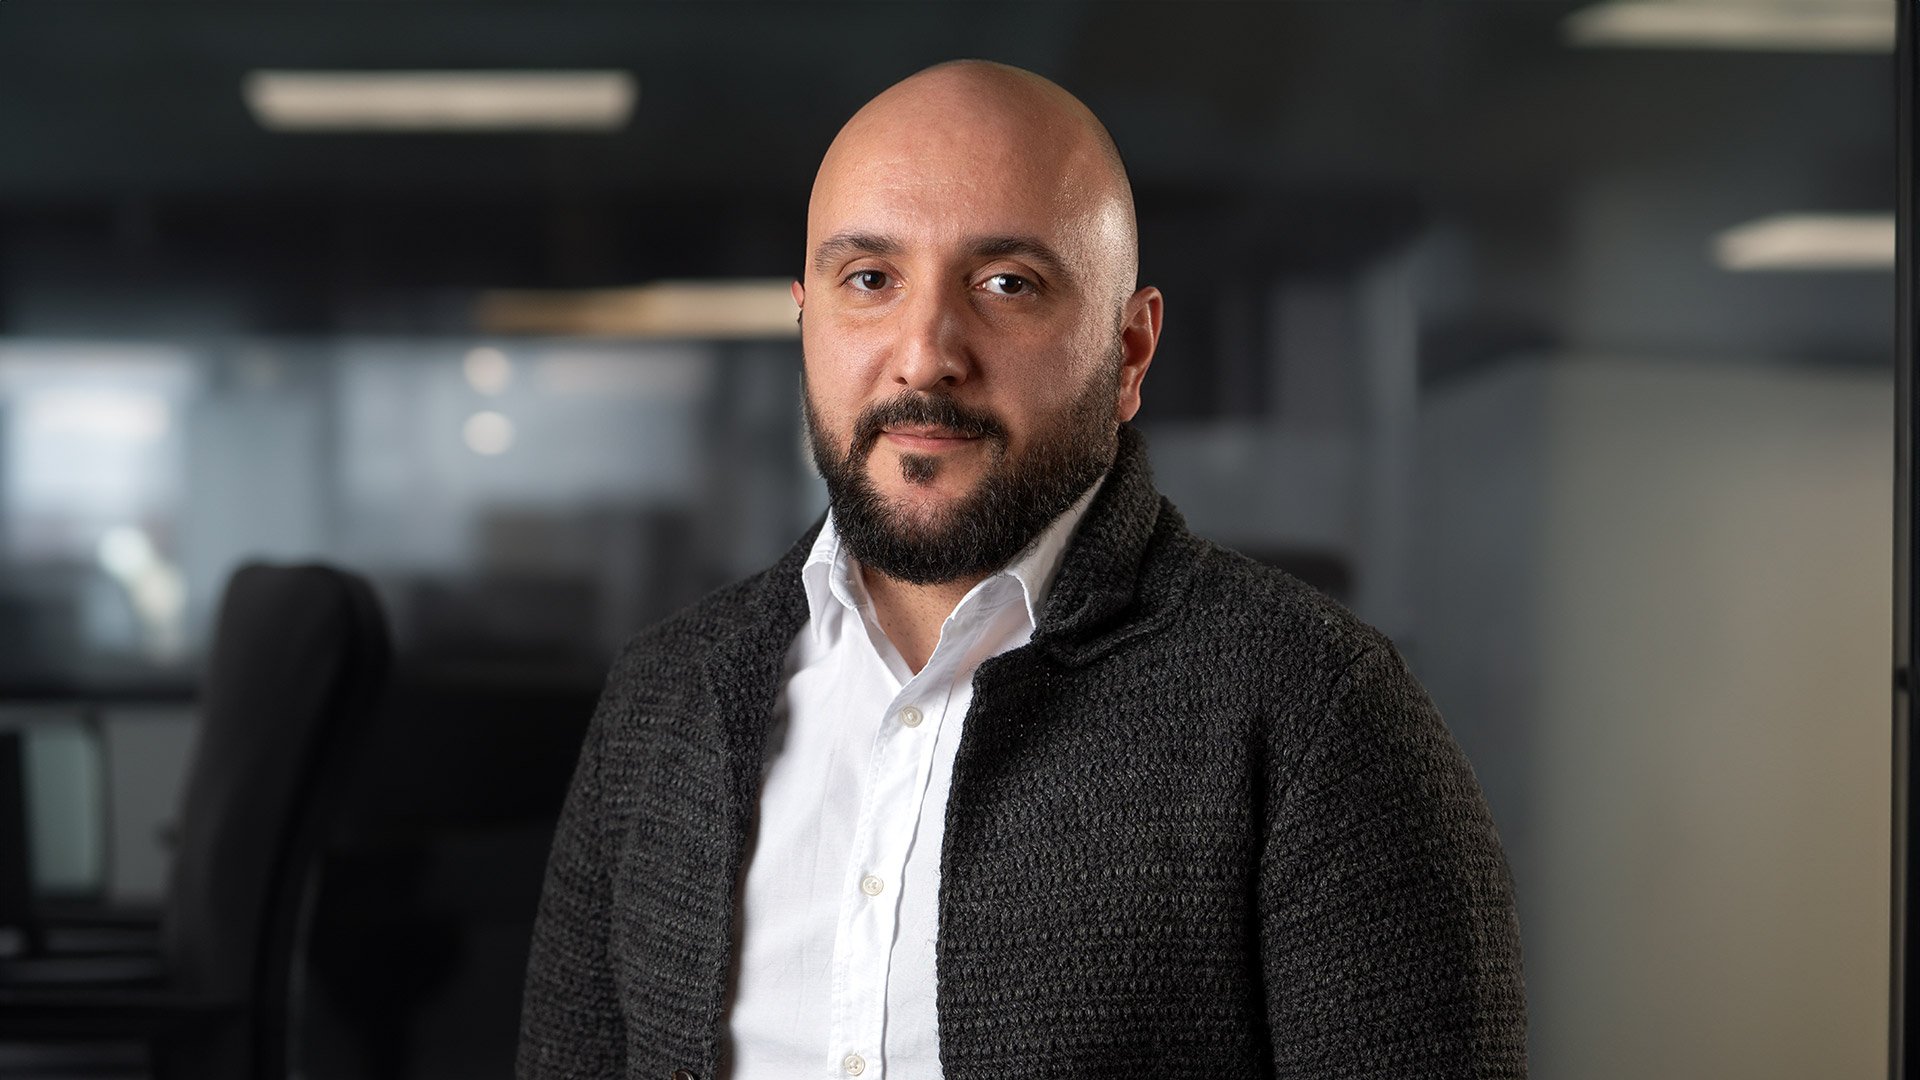 Hayk Sargsyan: “América Latina es sin duda un mercado dinámico y en crecimiento para los estudios de juegos B2B como Galaxsys”